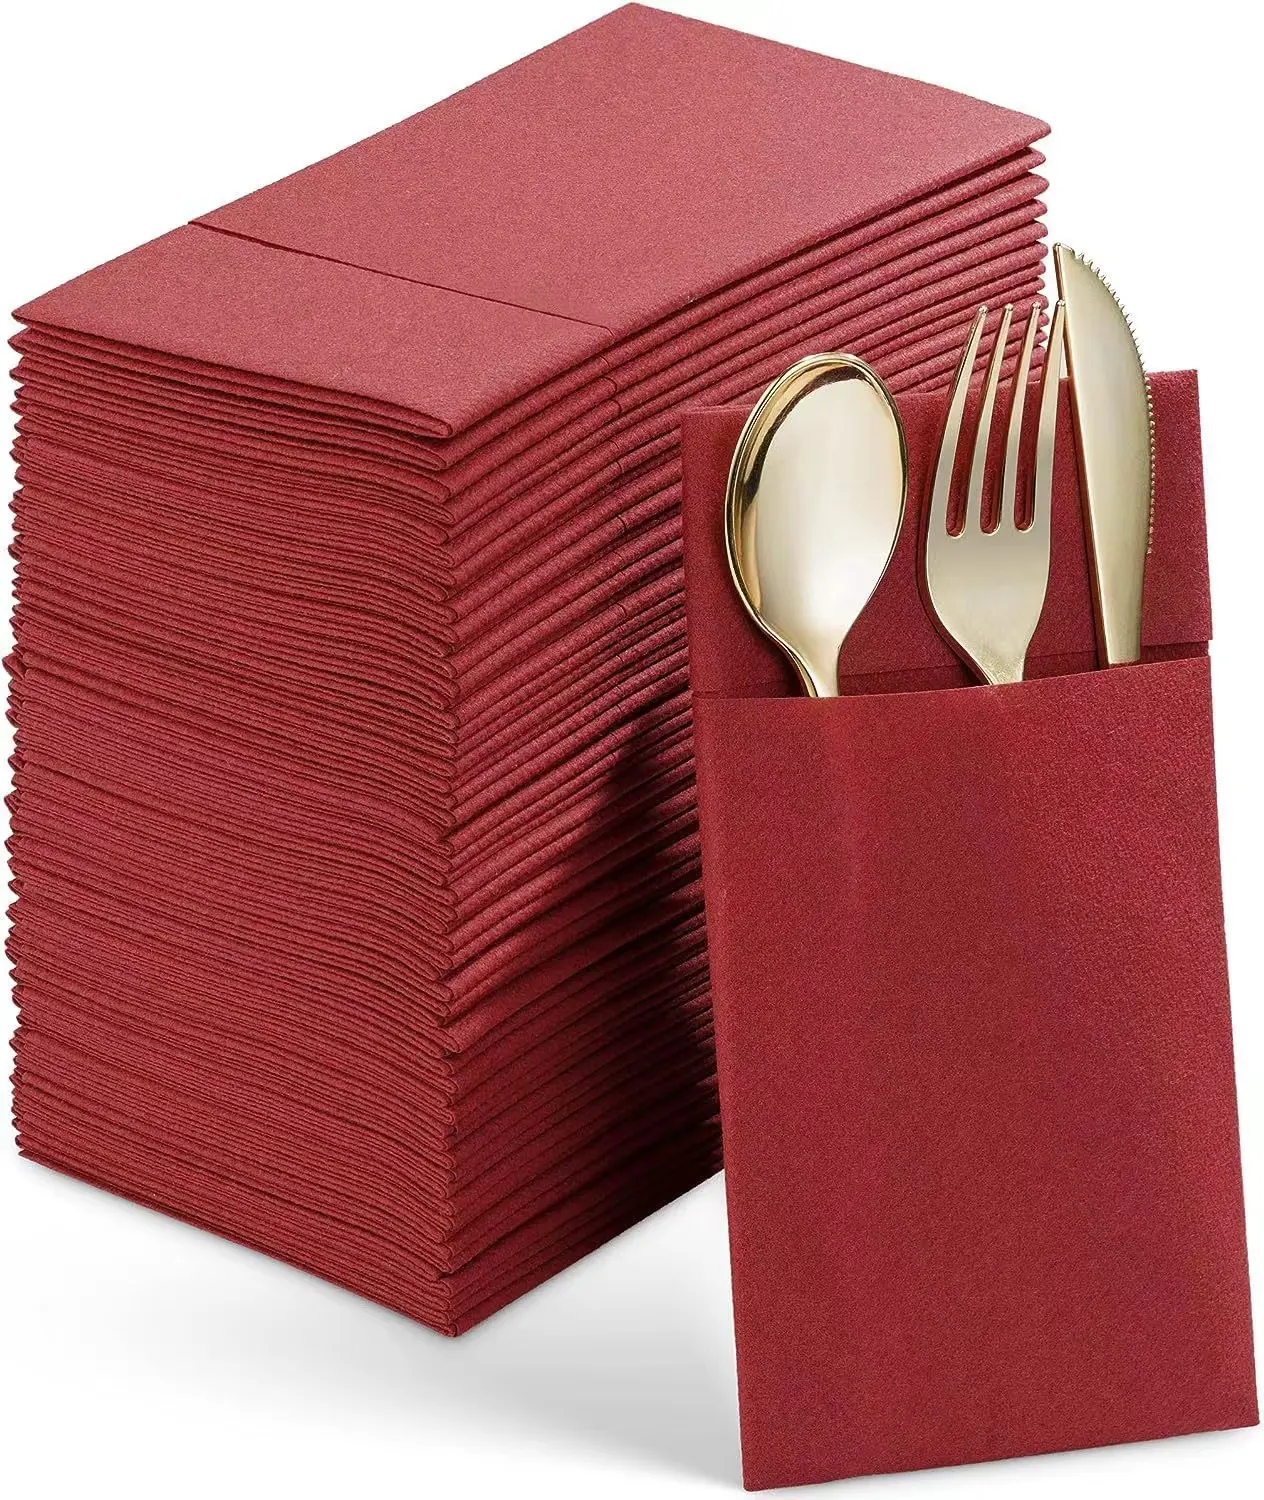 Tovaglioli per cena in pasta di legno vergine sani e innocui tovaglioli di carta velina per feste e ristoranti personalizzati